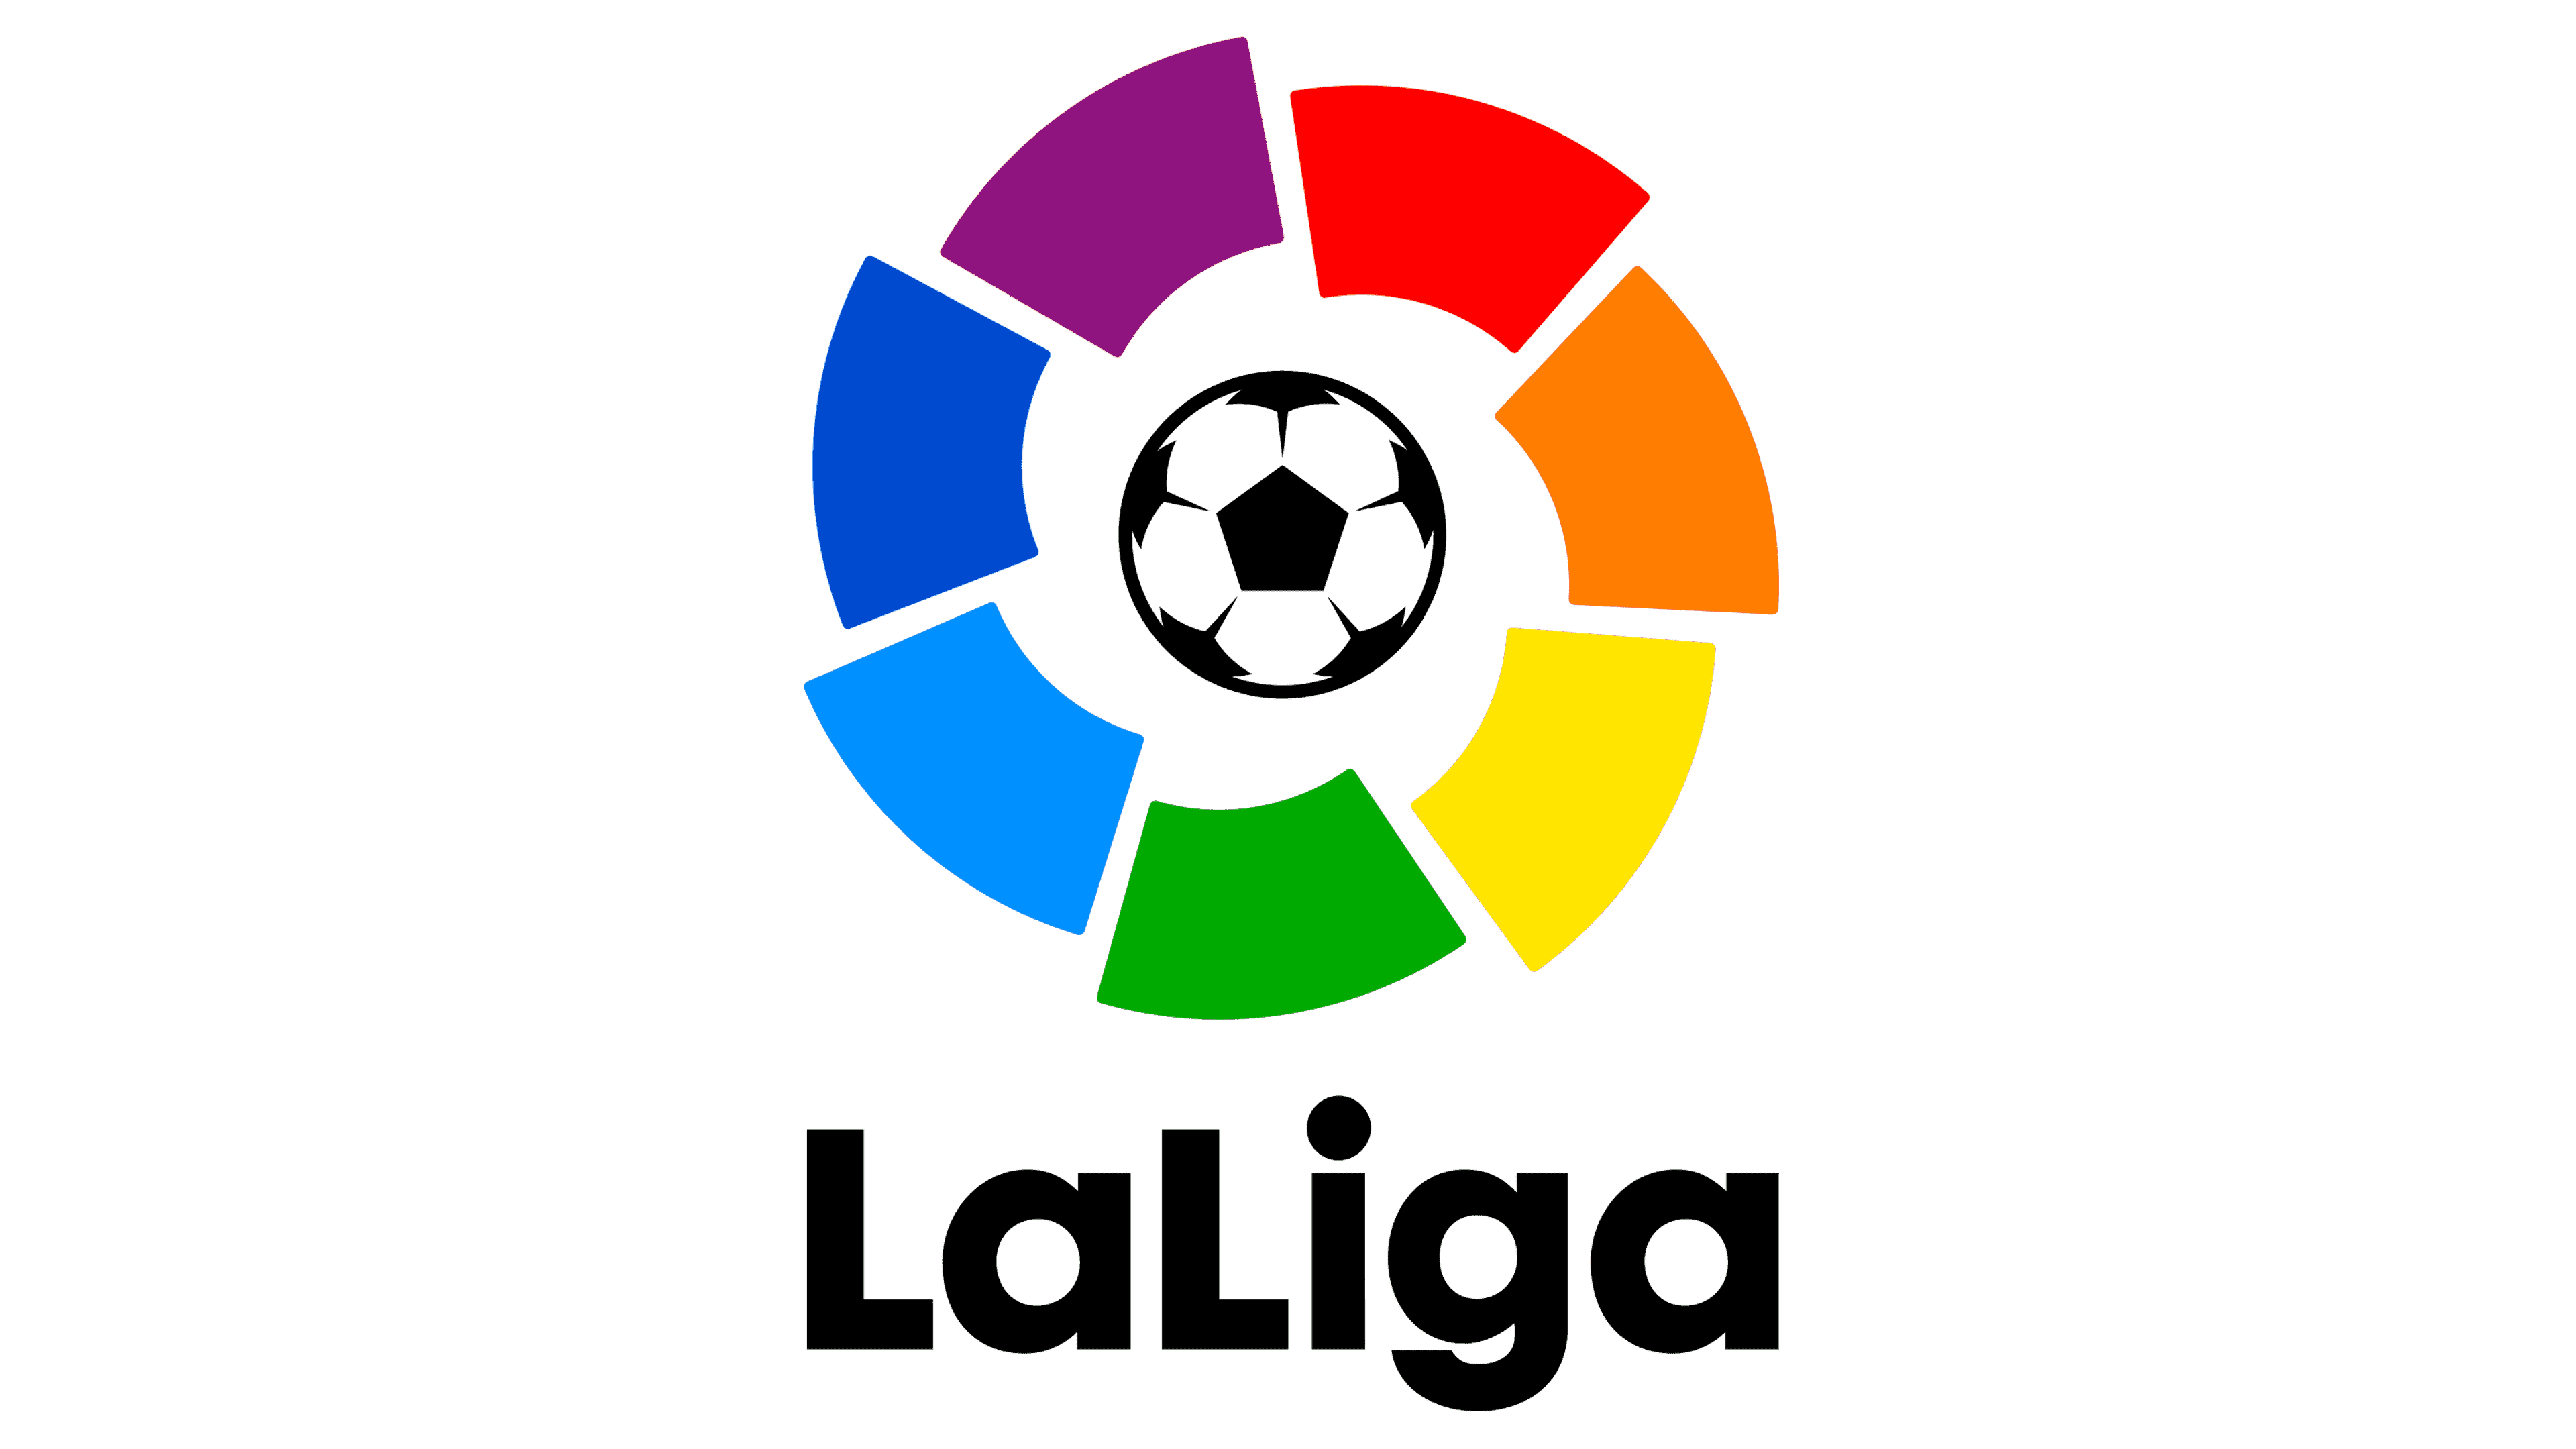 La Liga Logo 2019 2020, HD Png Download , Transparent Png Image - PNGitem